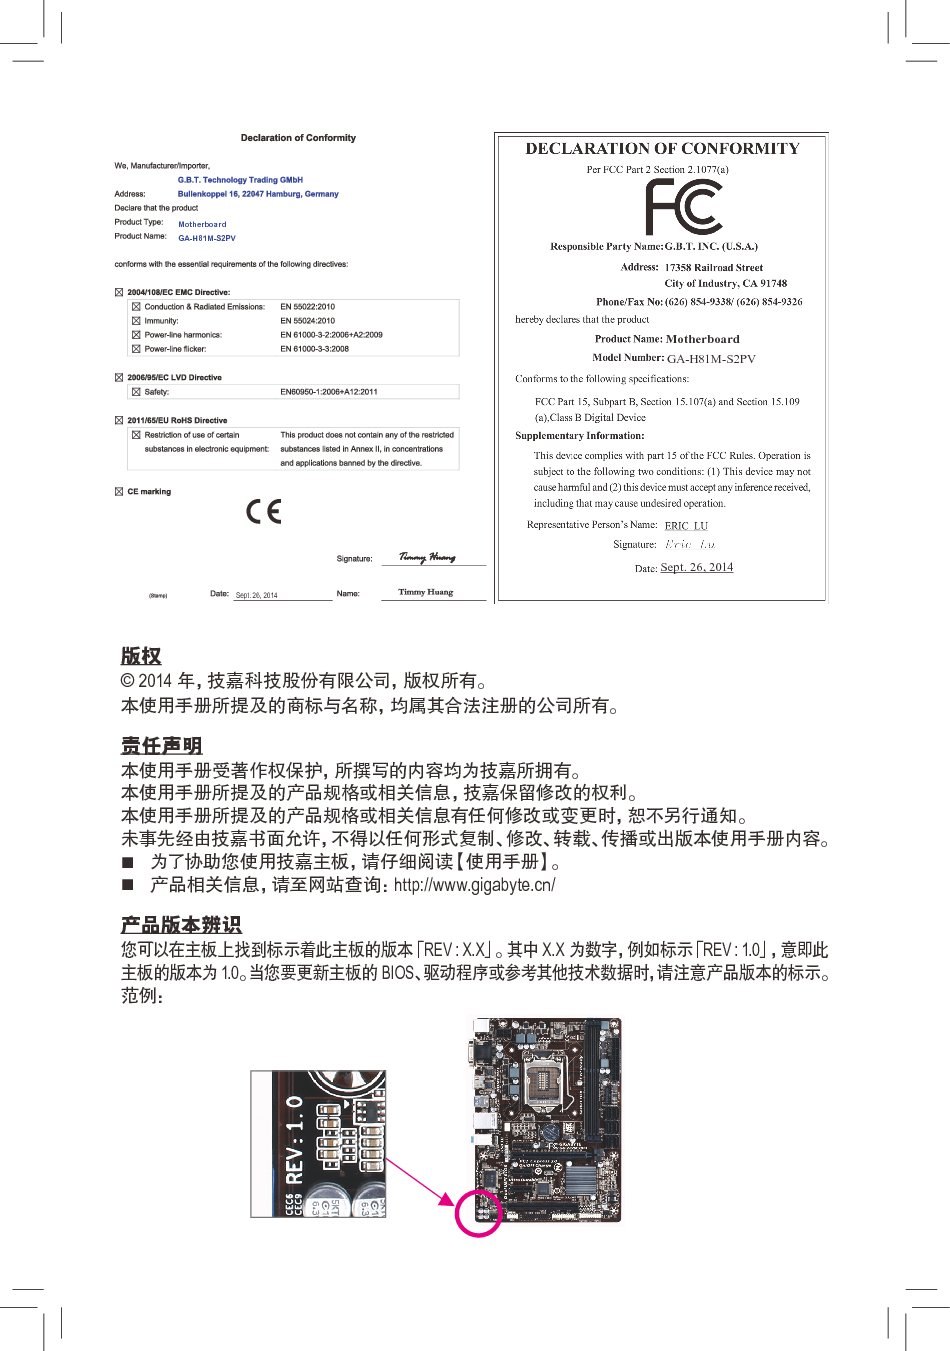 技嘉 Gigabyte GA-H81M-S2PV 3001版 使用手册 第1页